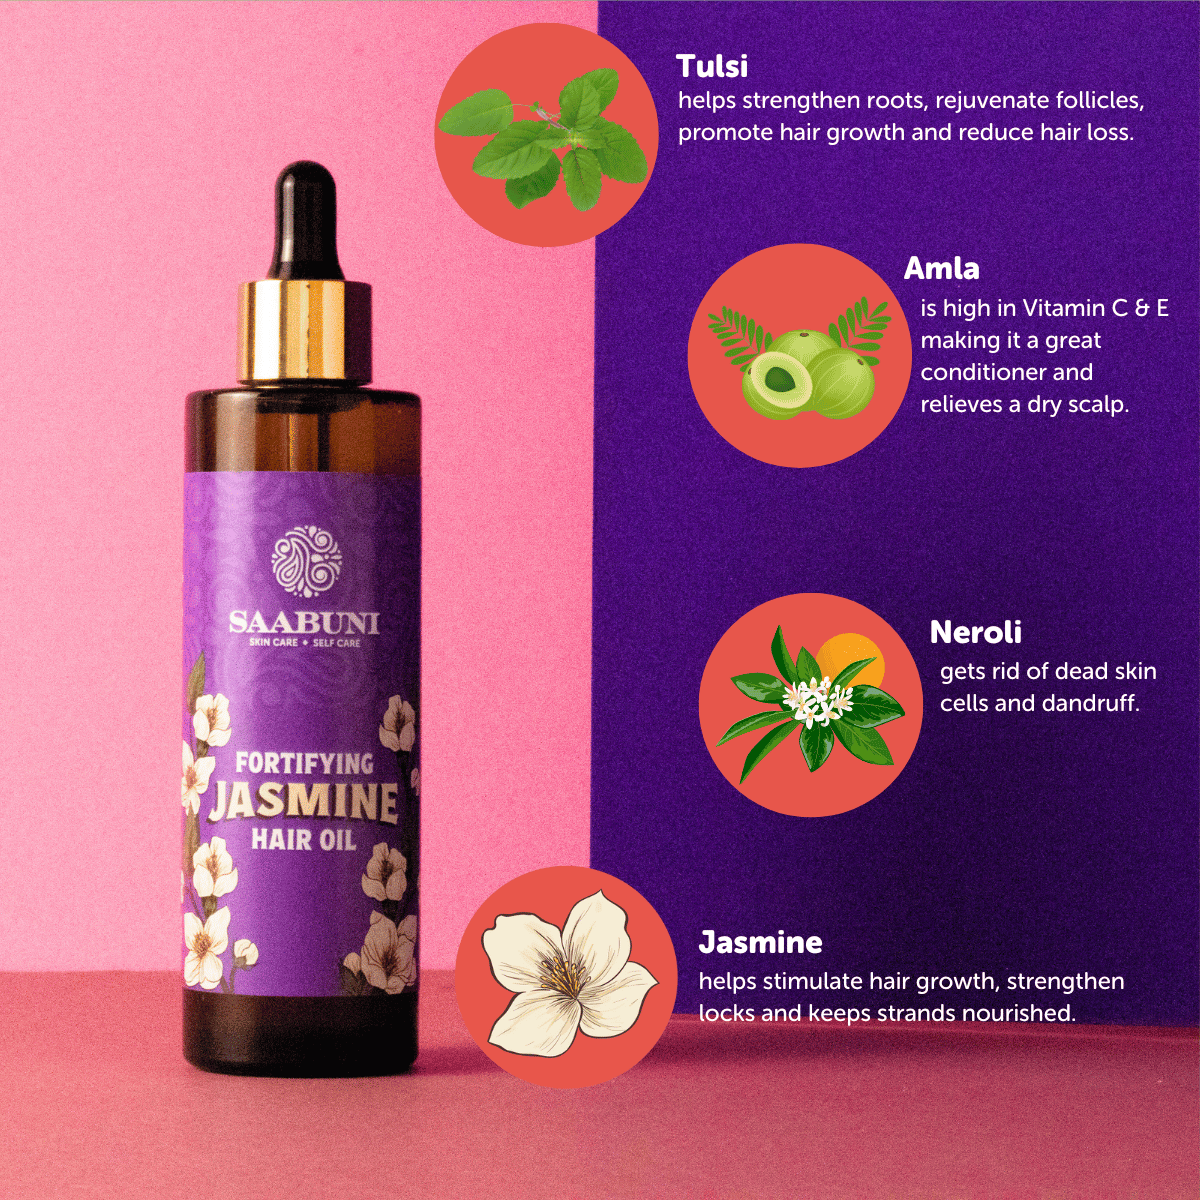 Jasmine Hair Oil ingredients